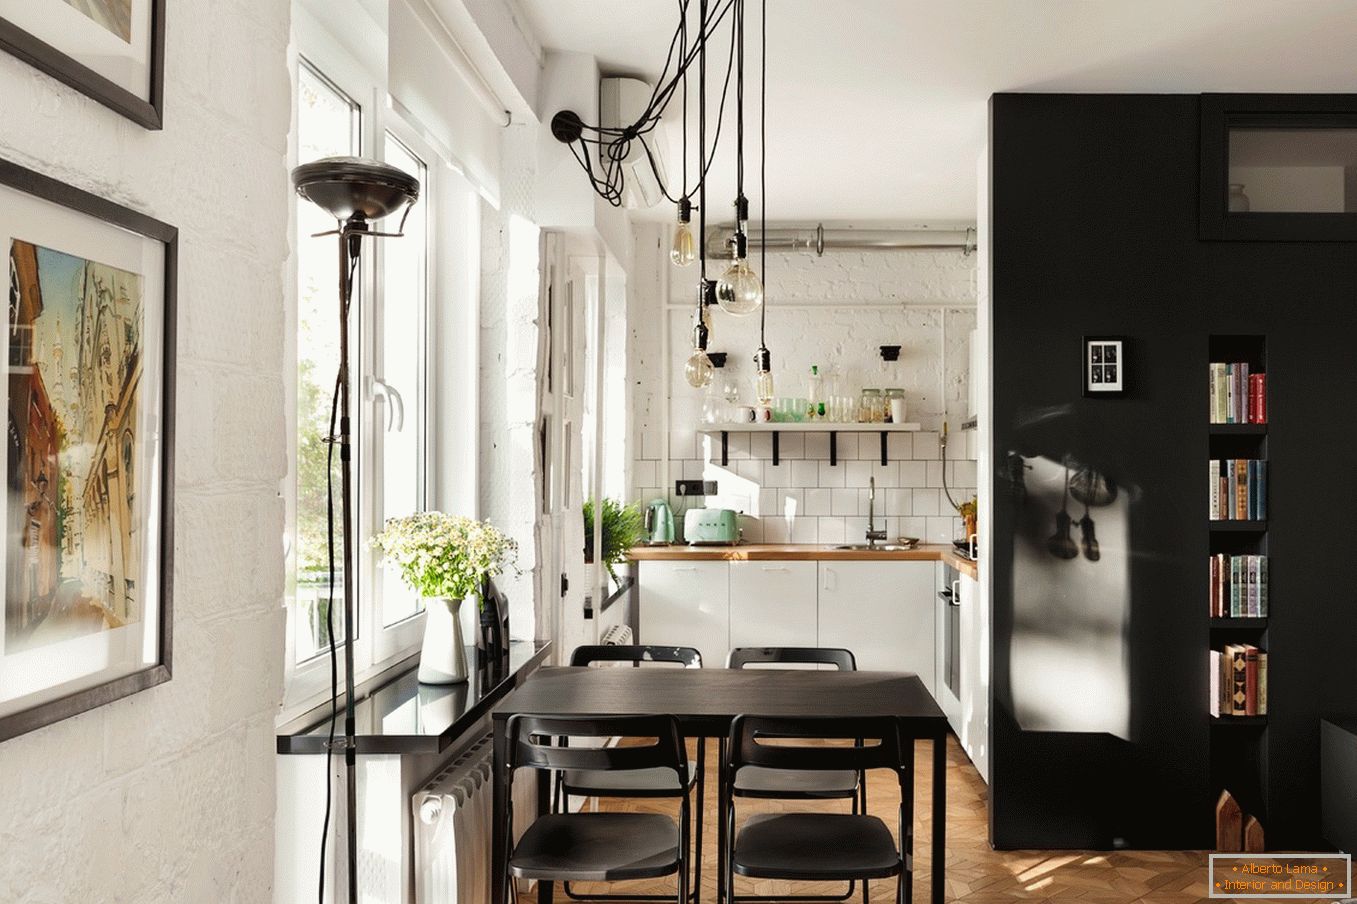 Design de uma pequena cozinha em preto e branco